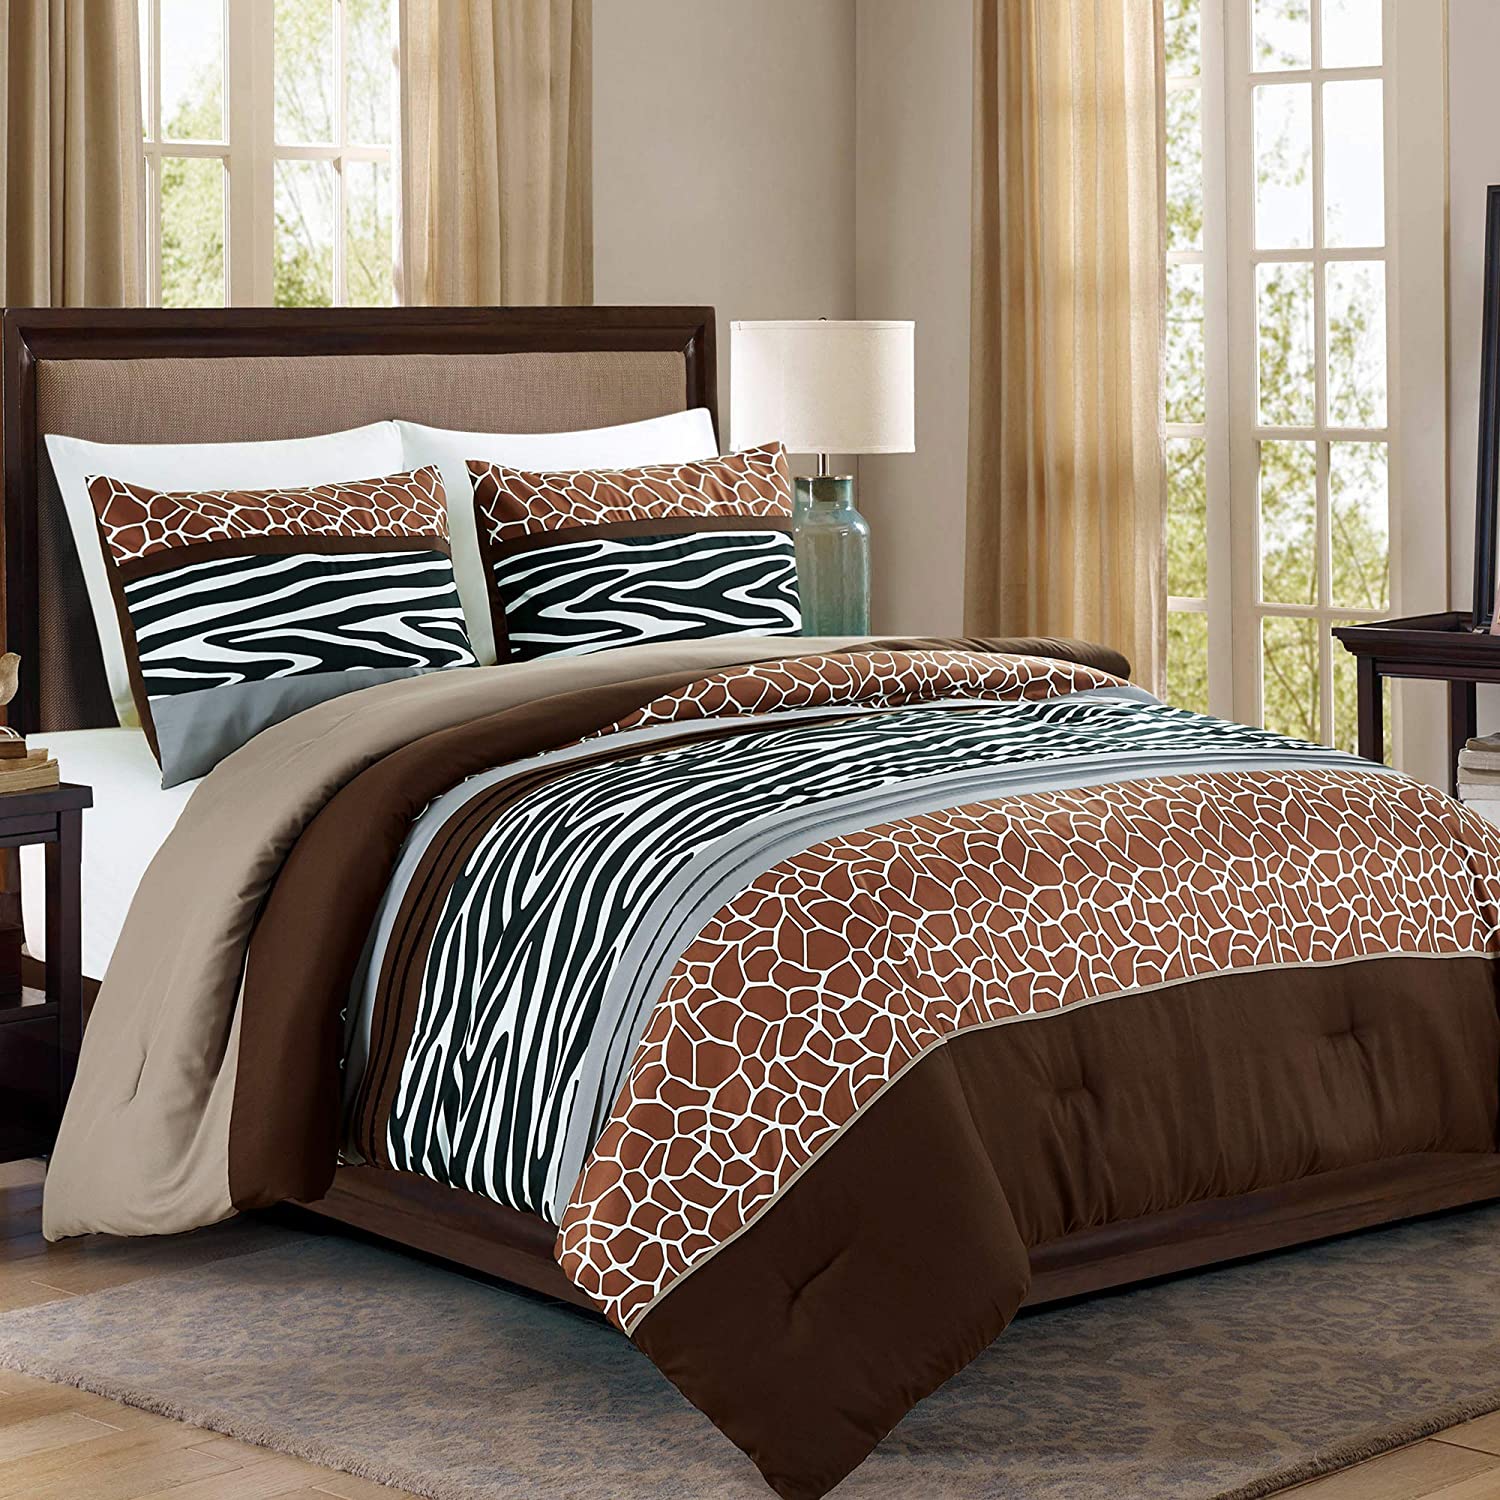 Animal Safari Print King Comforter Set, Safari Bedding Sets King